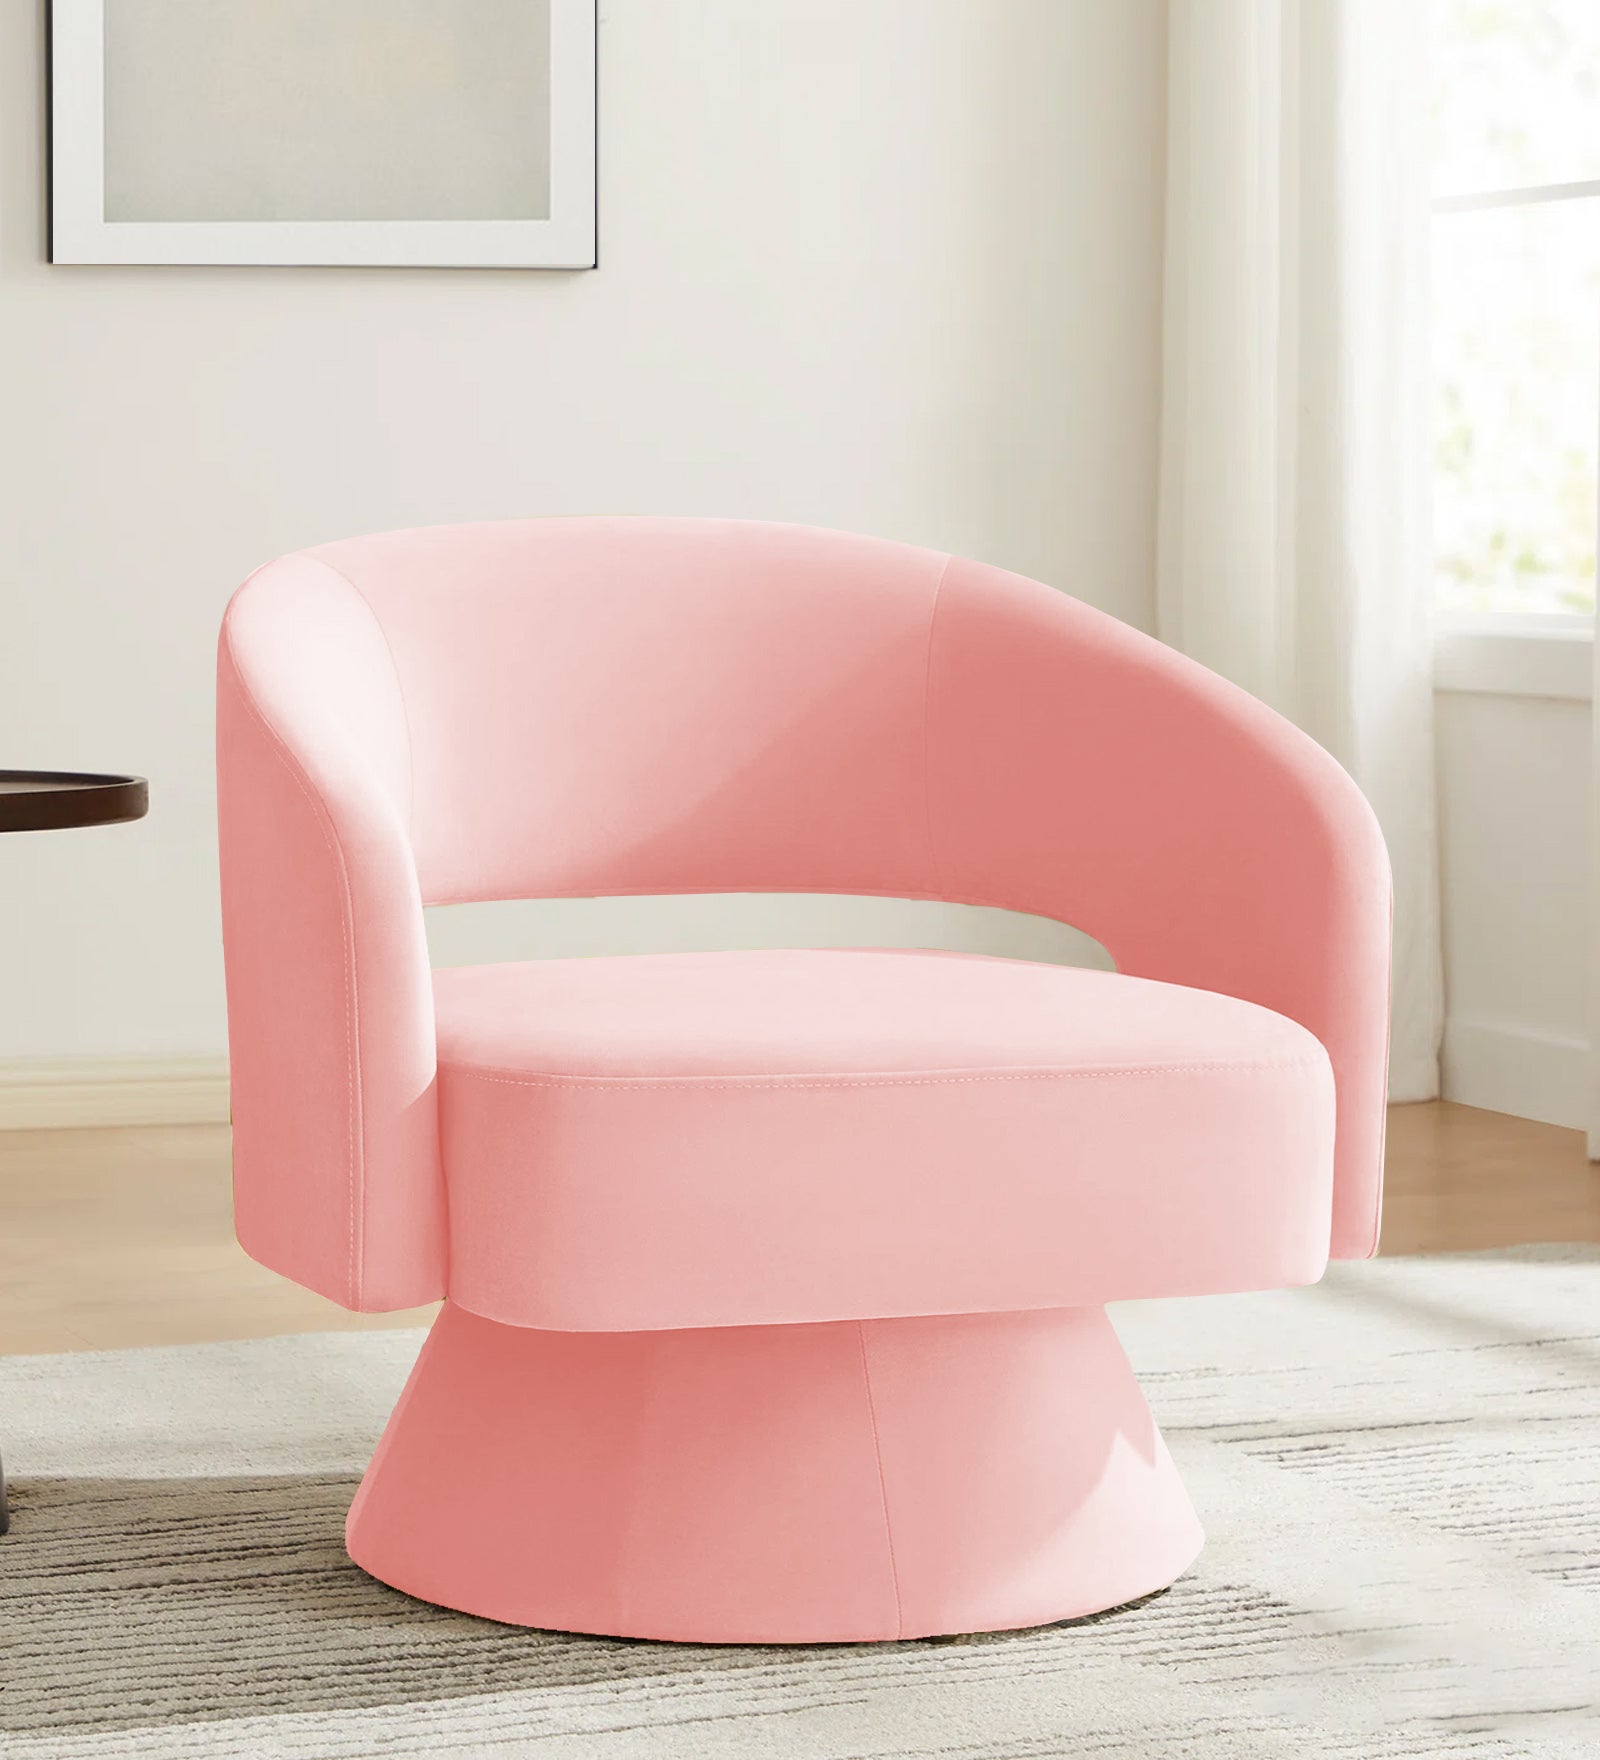 Pendra Velvet Swivel Chair in Millennial Pink Colour